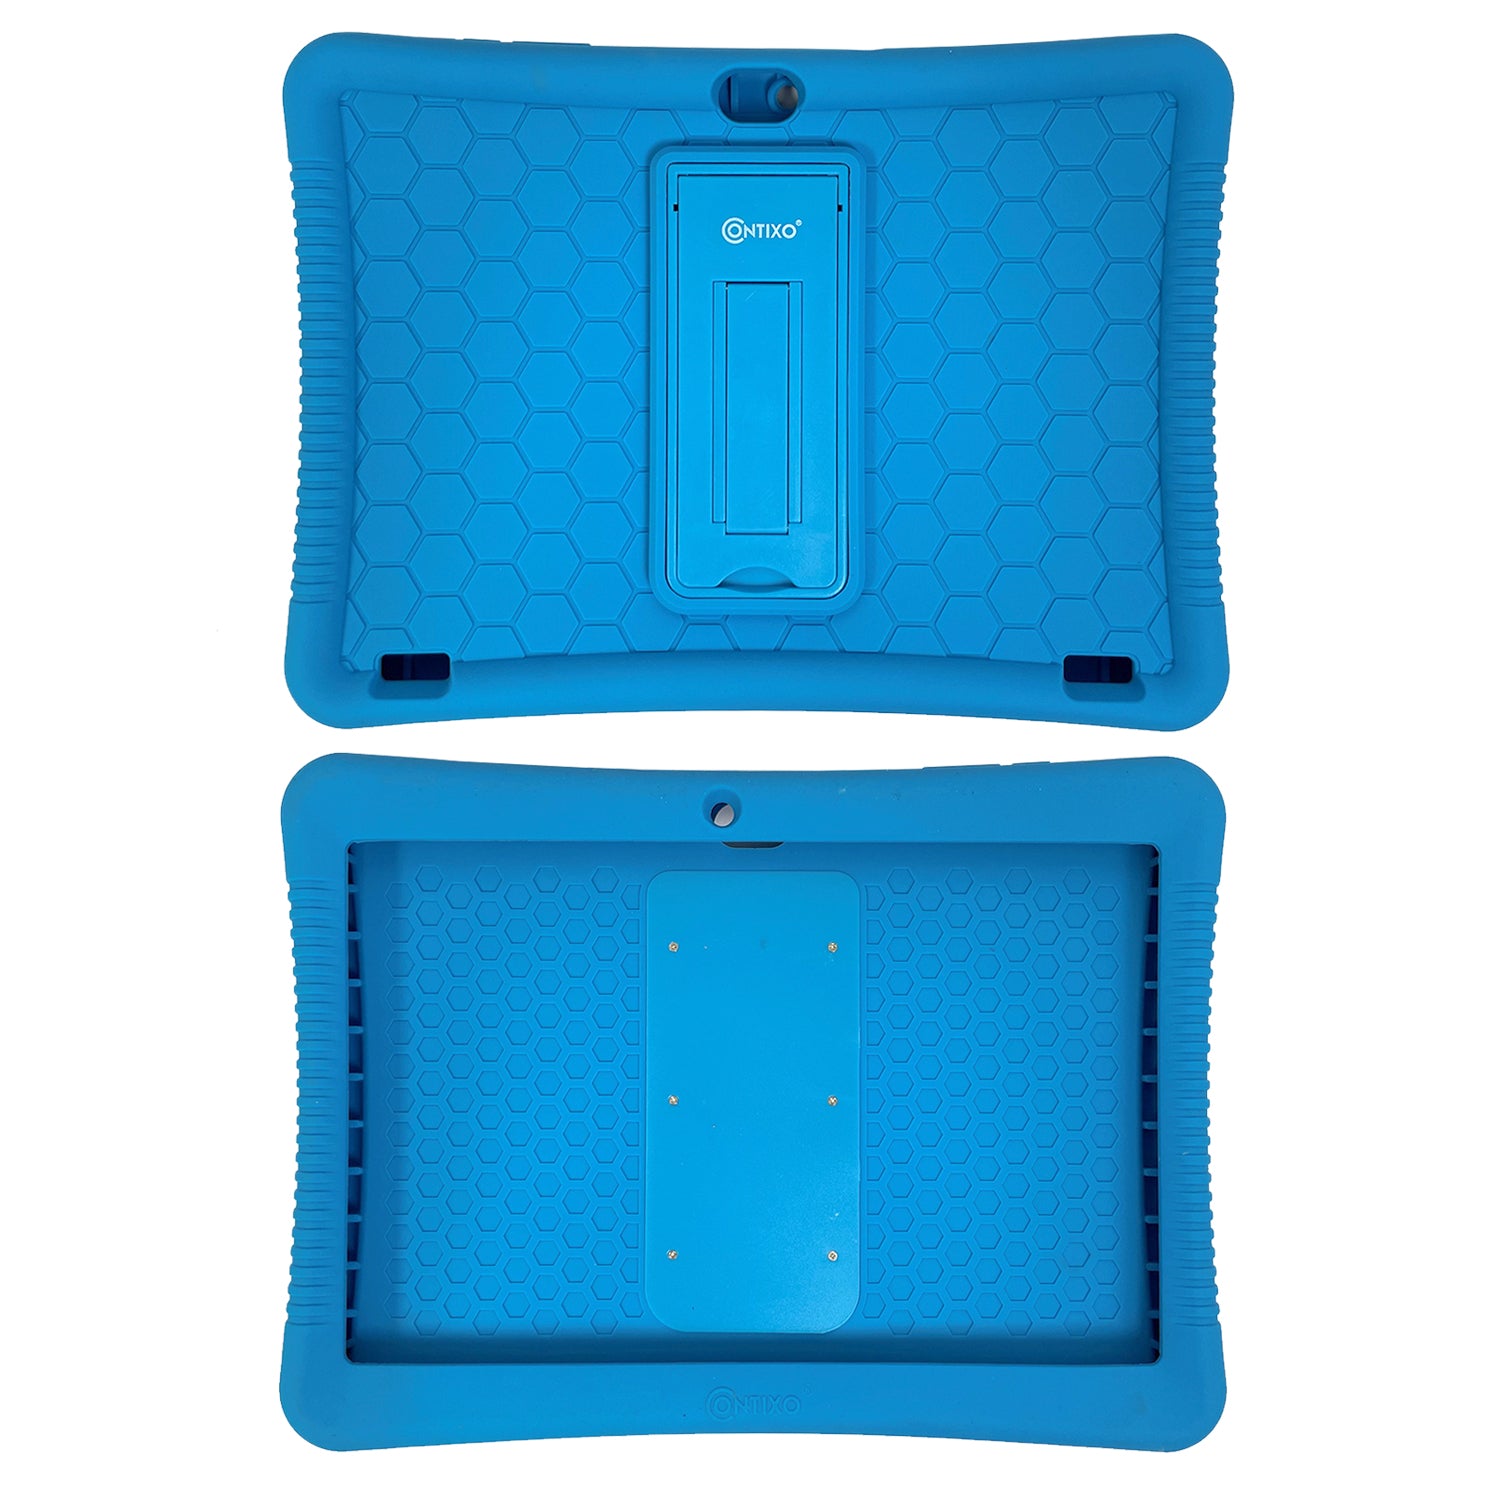 Contixo K102 Kids Tablet -Protective Silicone Case, Multi-Color